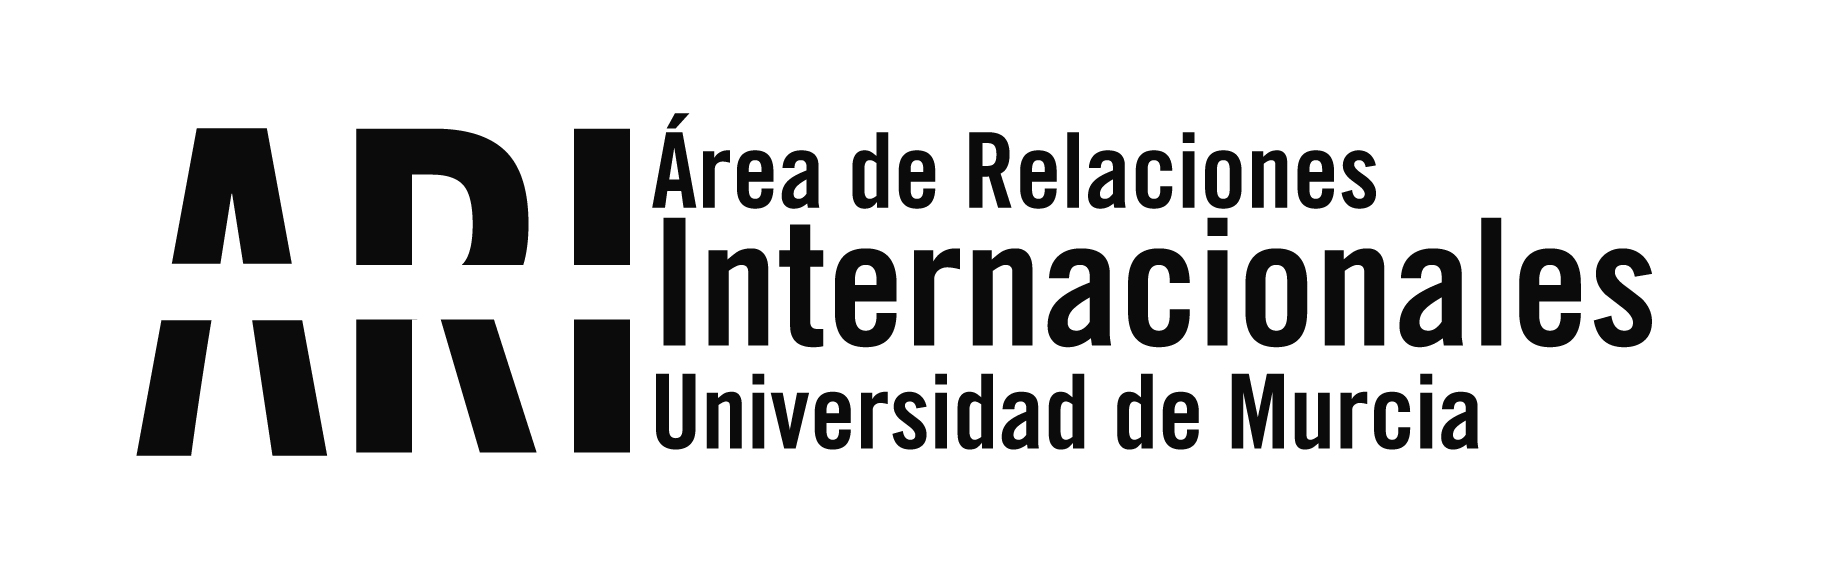 Estructura y directorio - Área de Relaciones Internacionales